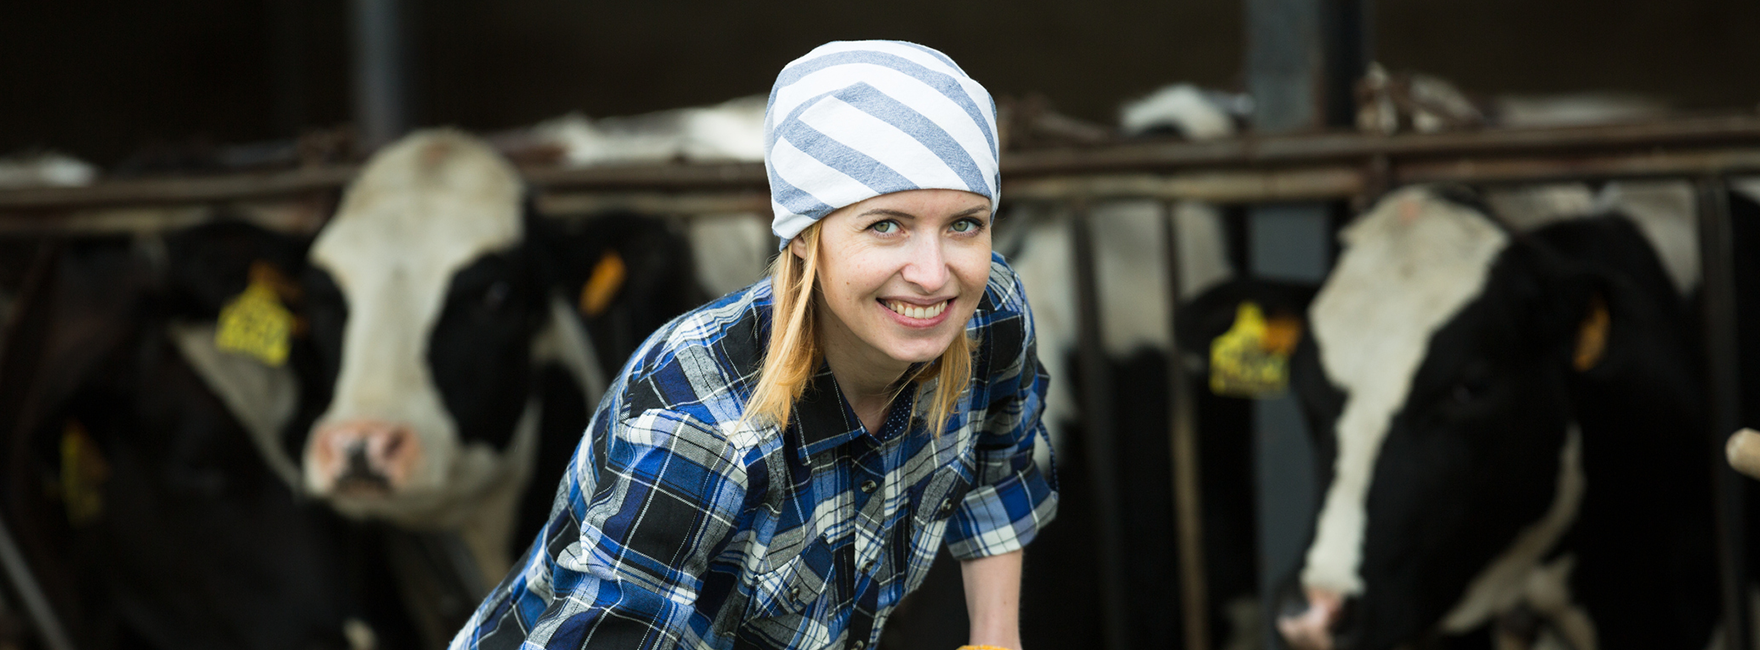 Eine junge Frau schaufelt Heu. Sie trägt ein Kopftuch. Im Hintergrund stehen drei Kühe.